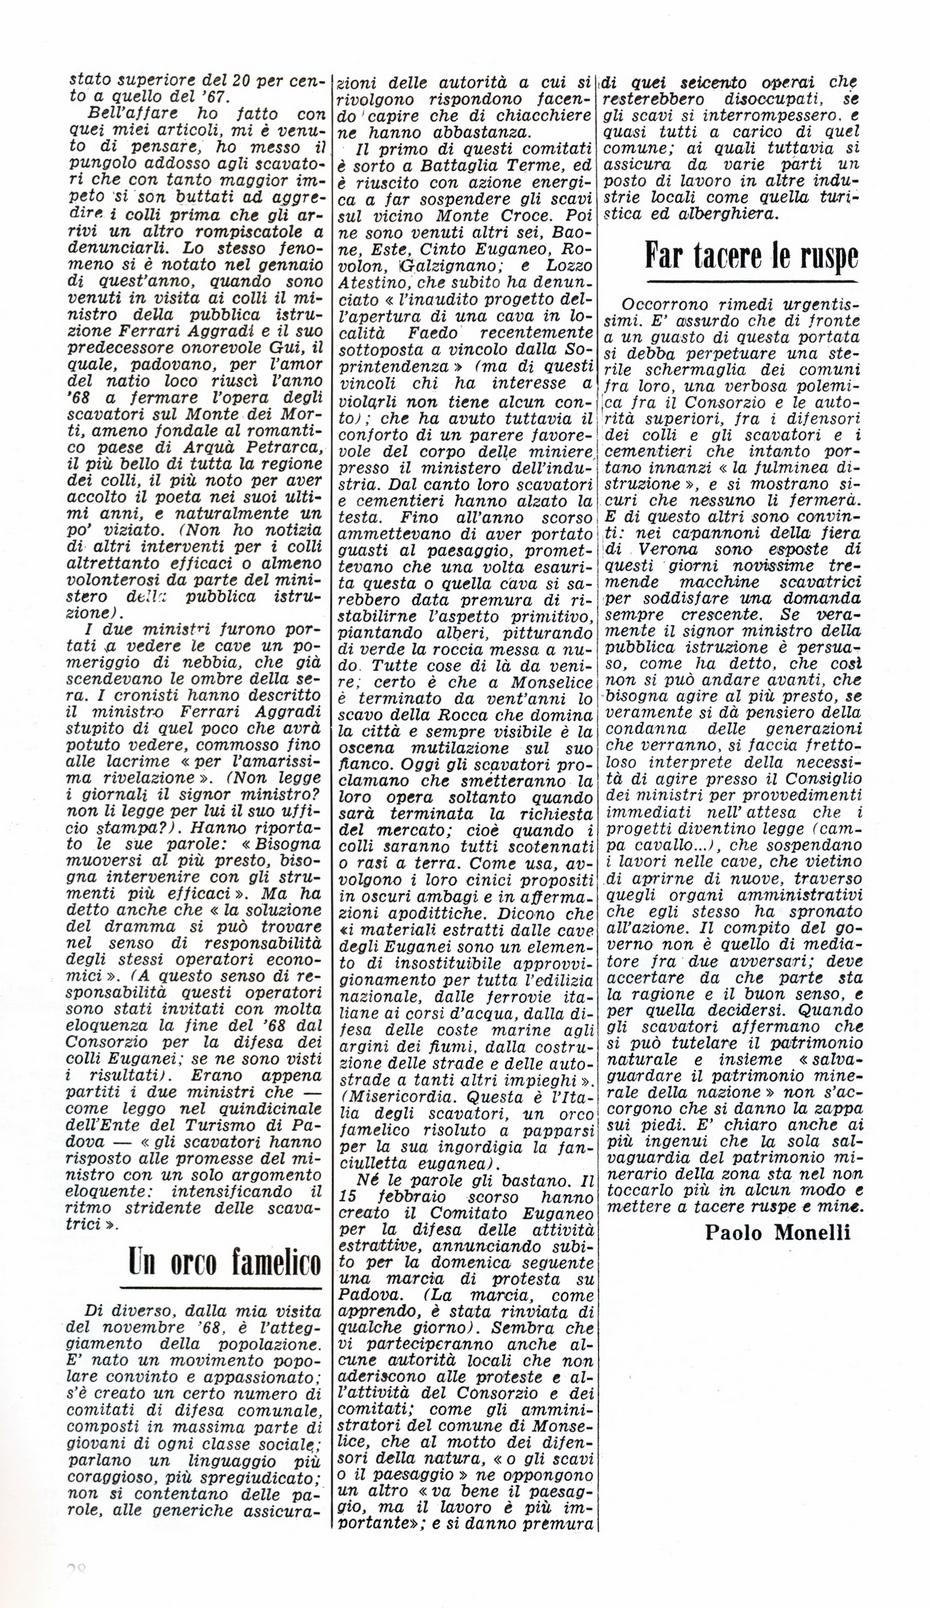 All'assalto dei colli Euganei. Articolo del 28 febbraio 1970, seconda parte.